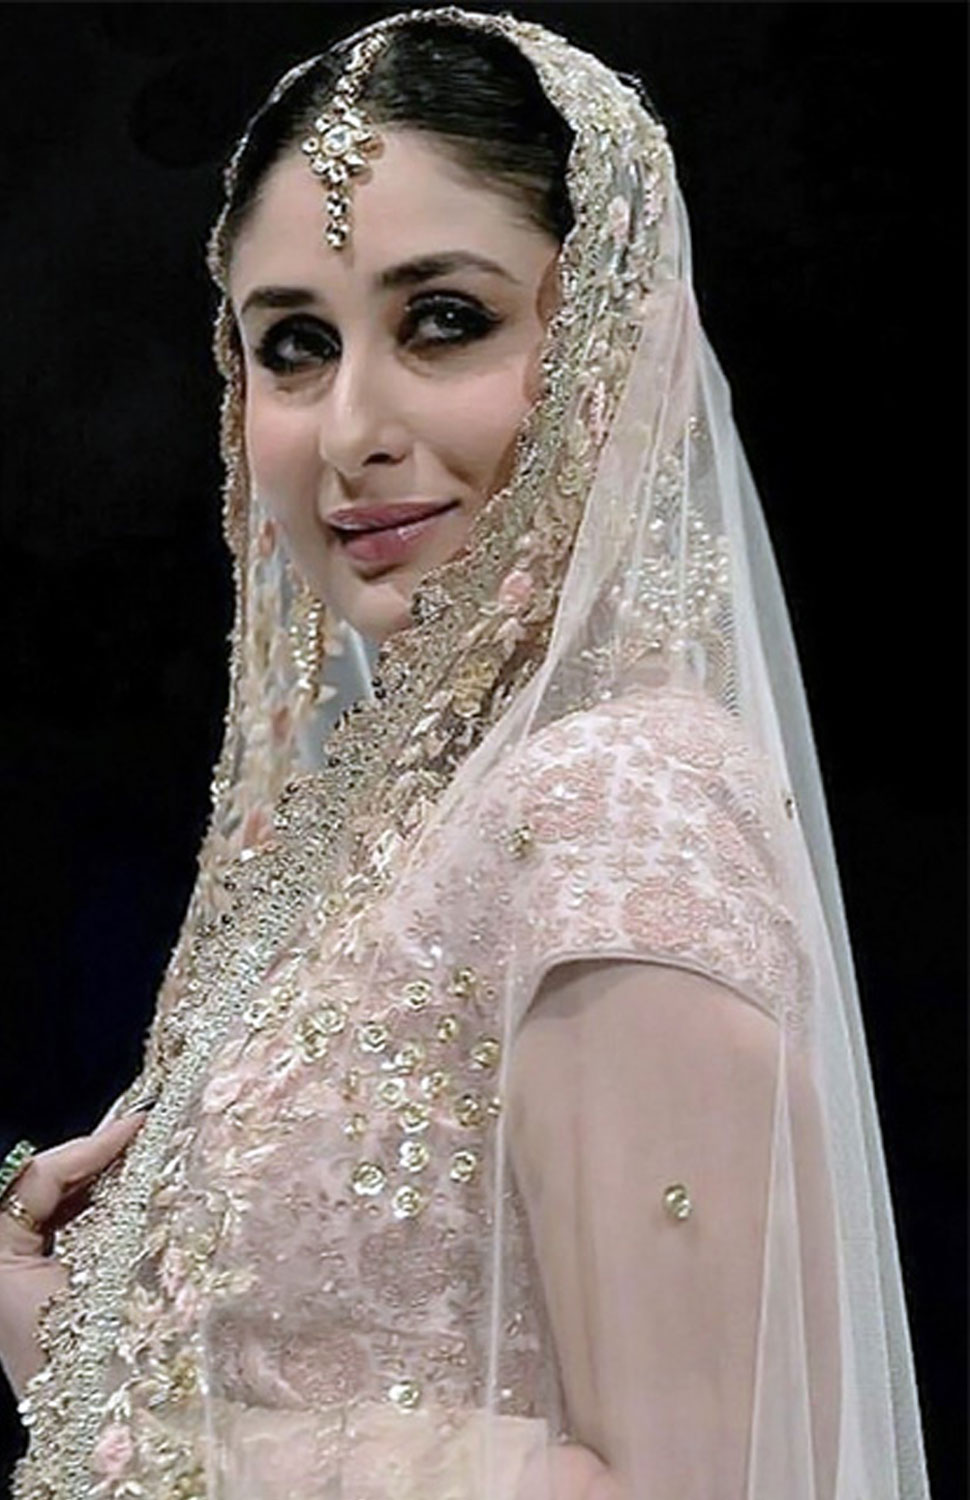 Kareena Kapoor steps out as a stunning bride at Doha